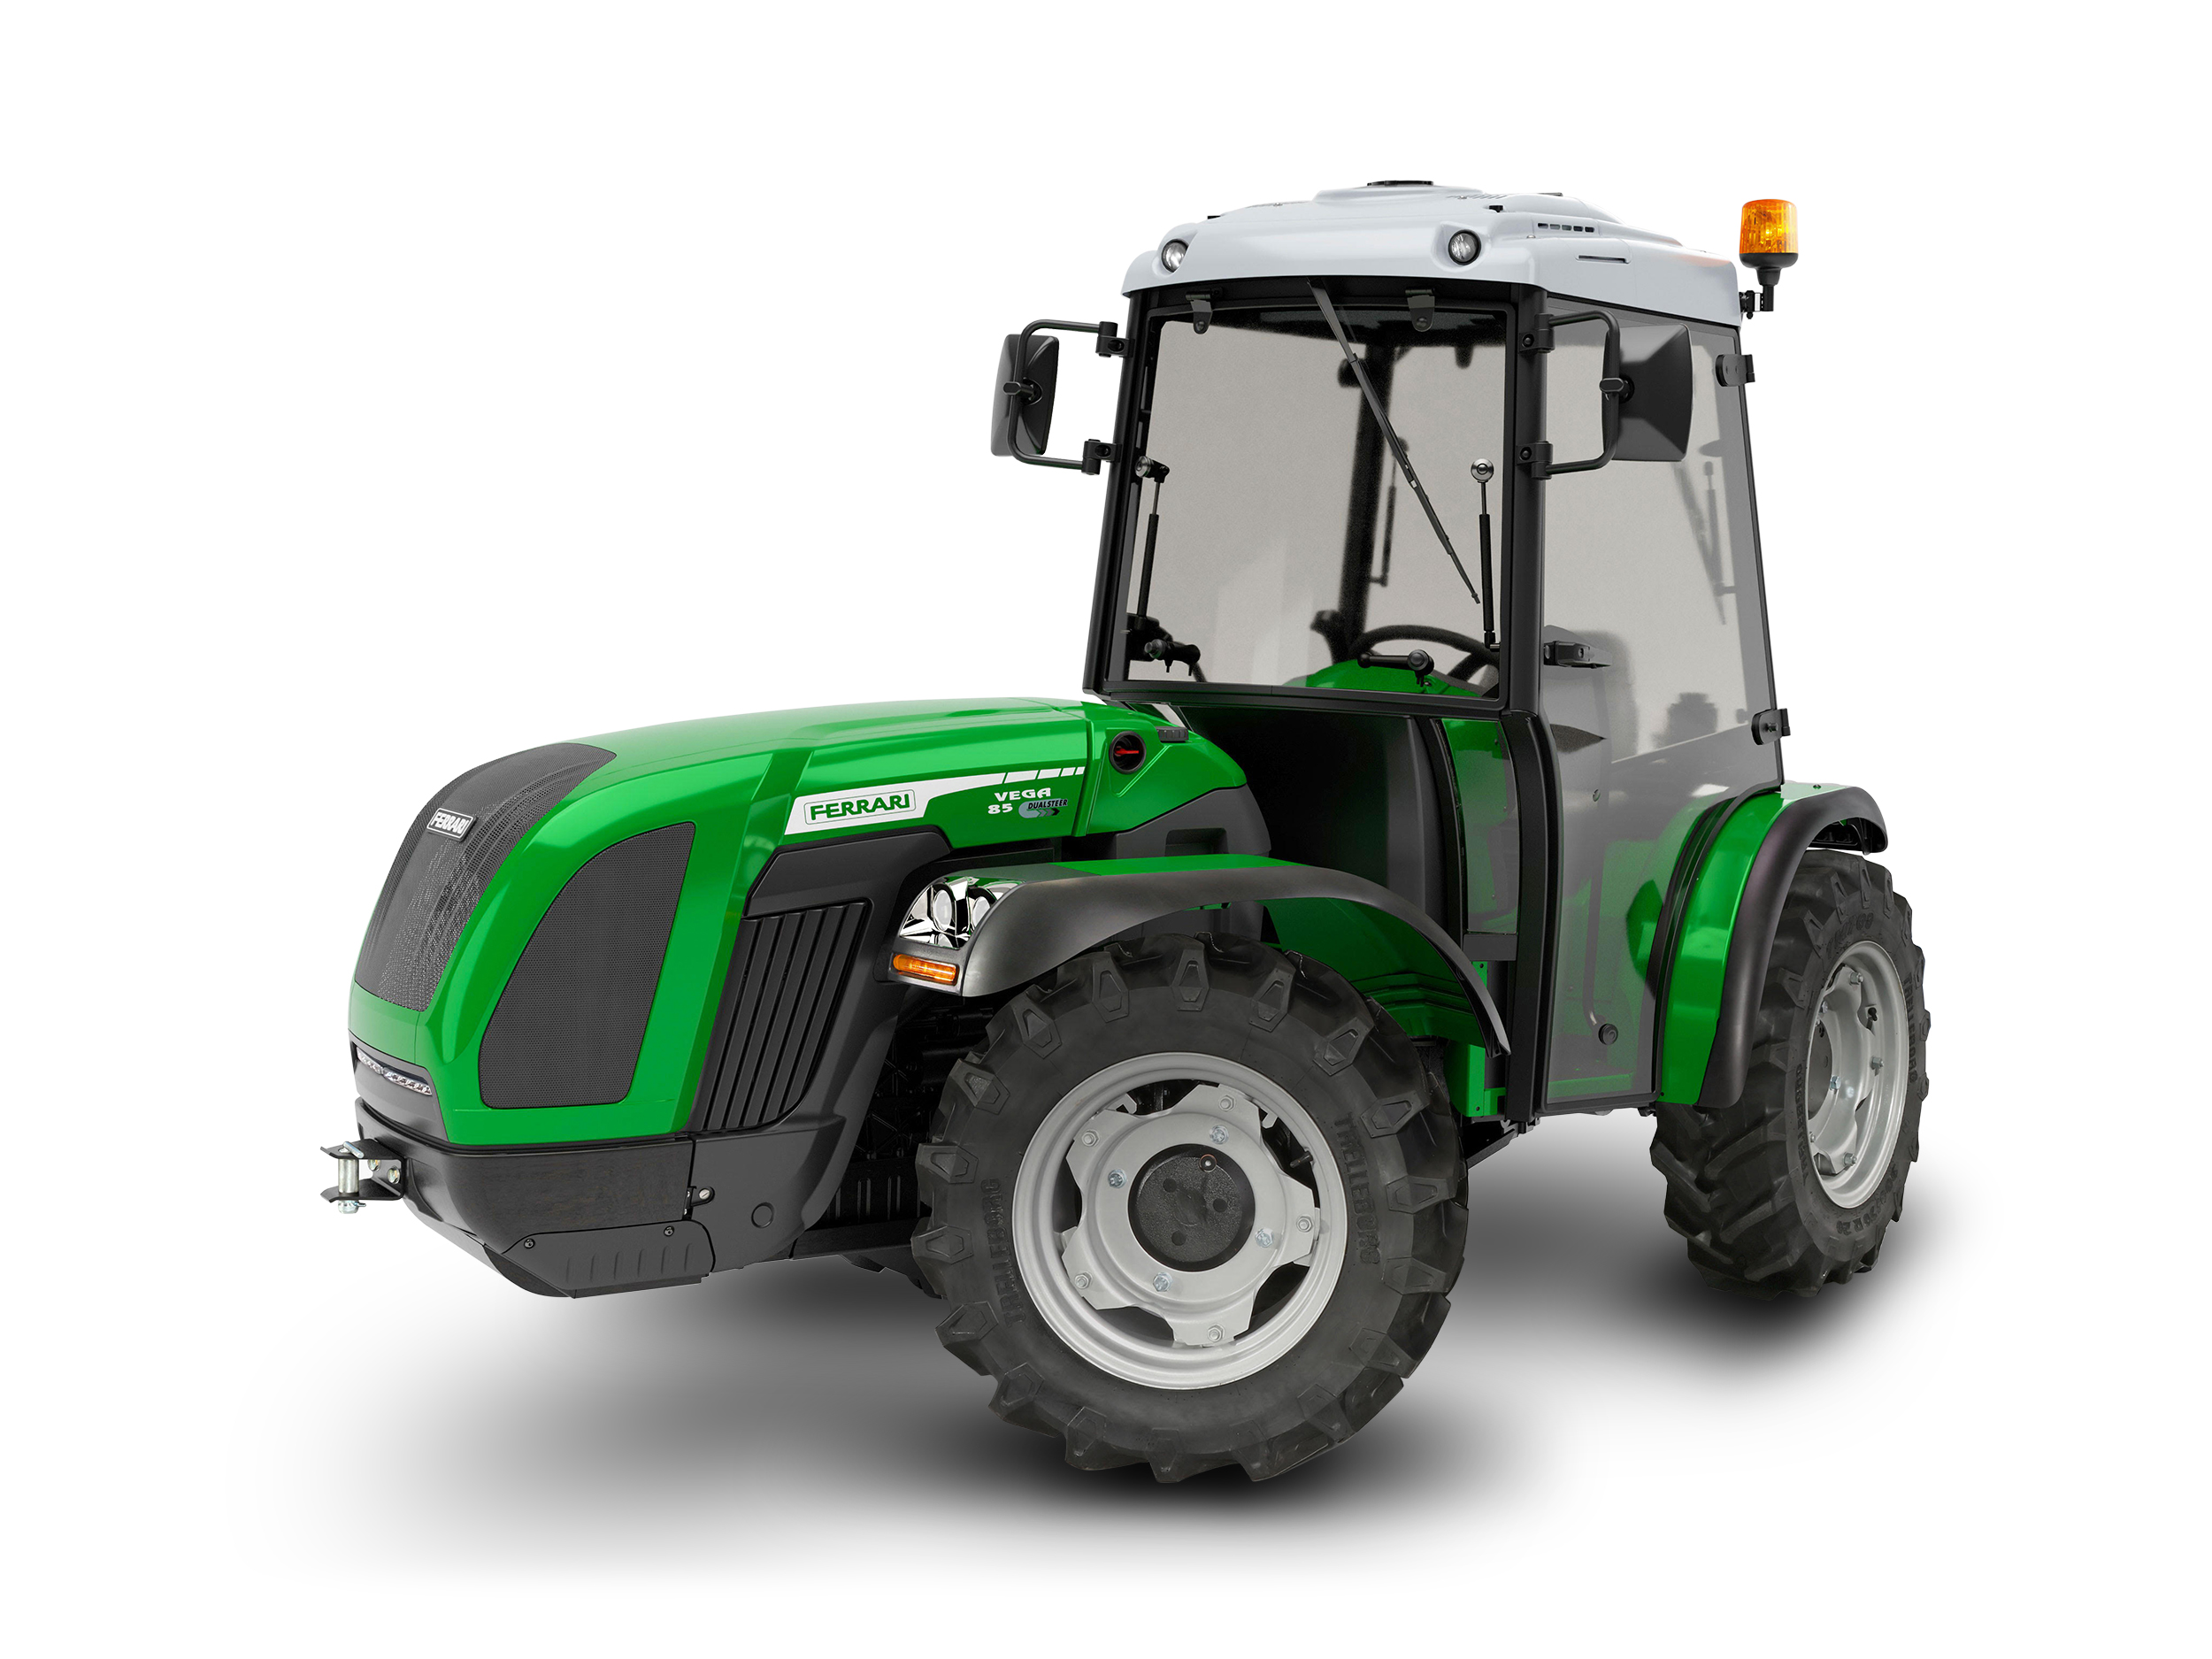 Tracteur agricole compact, puissant, polyvalent pour tous travaux en montagne : fenaison, broyage dans les pentes - ferrari vega 85 mt de 75,3 cv_0